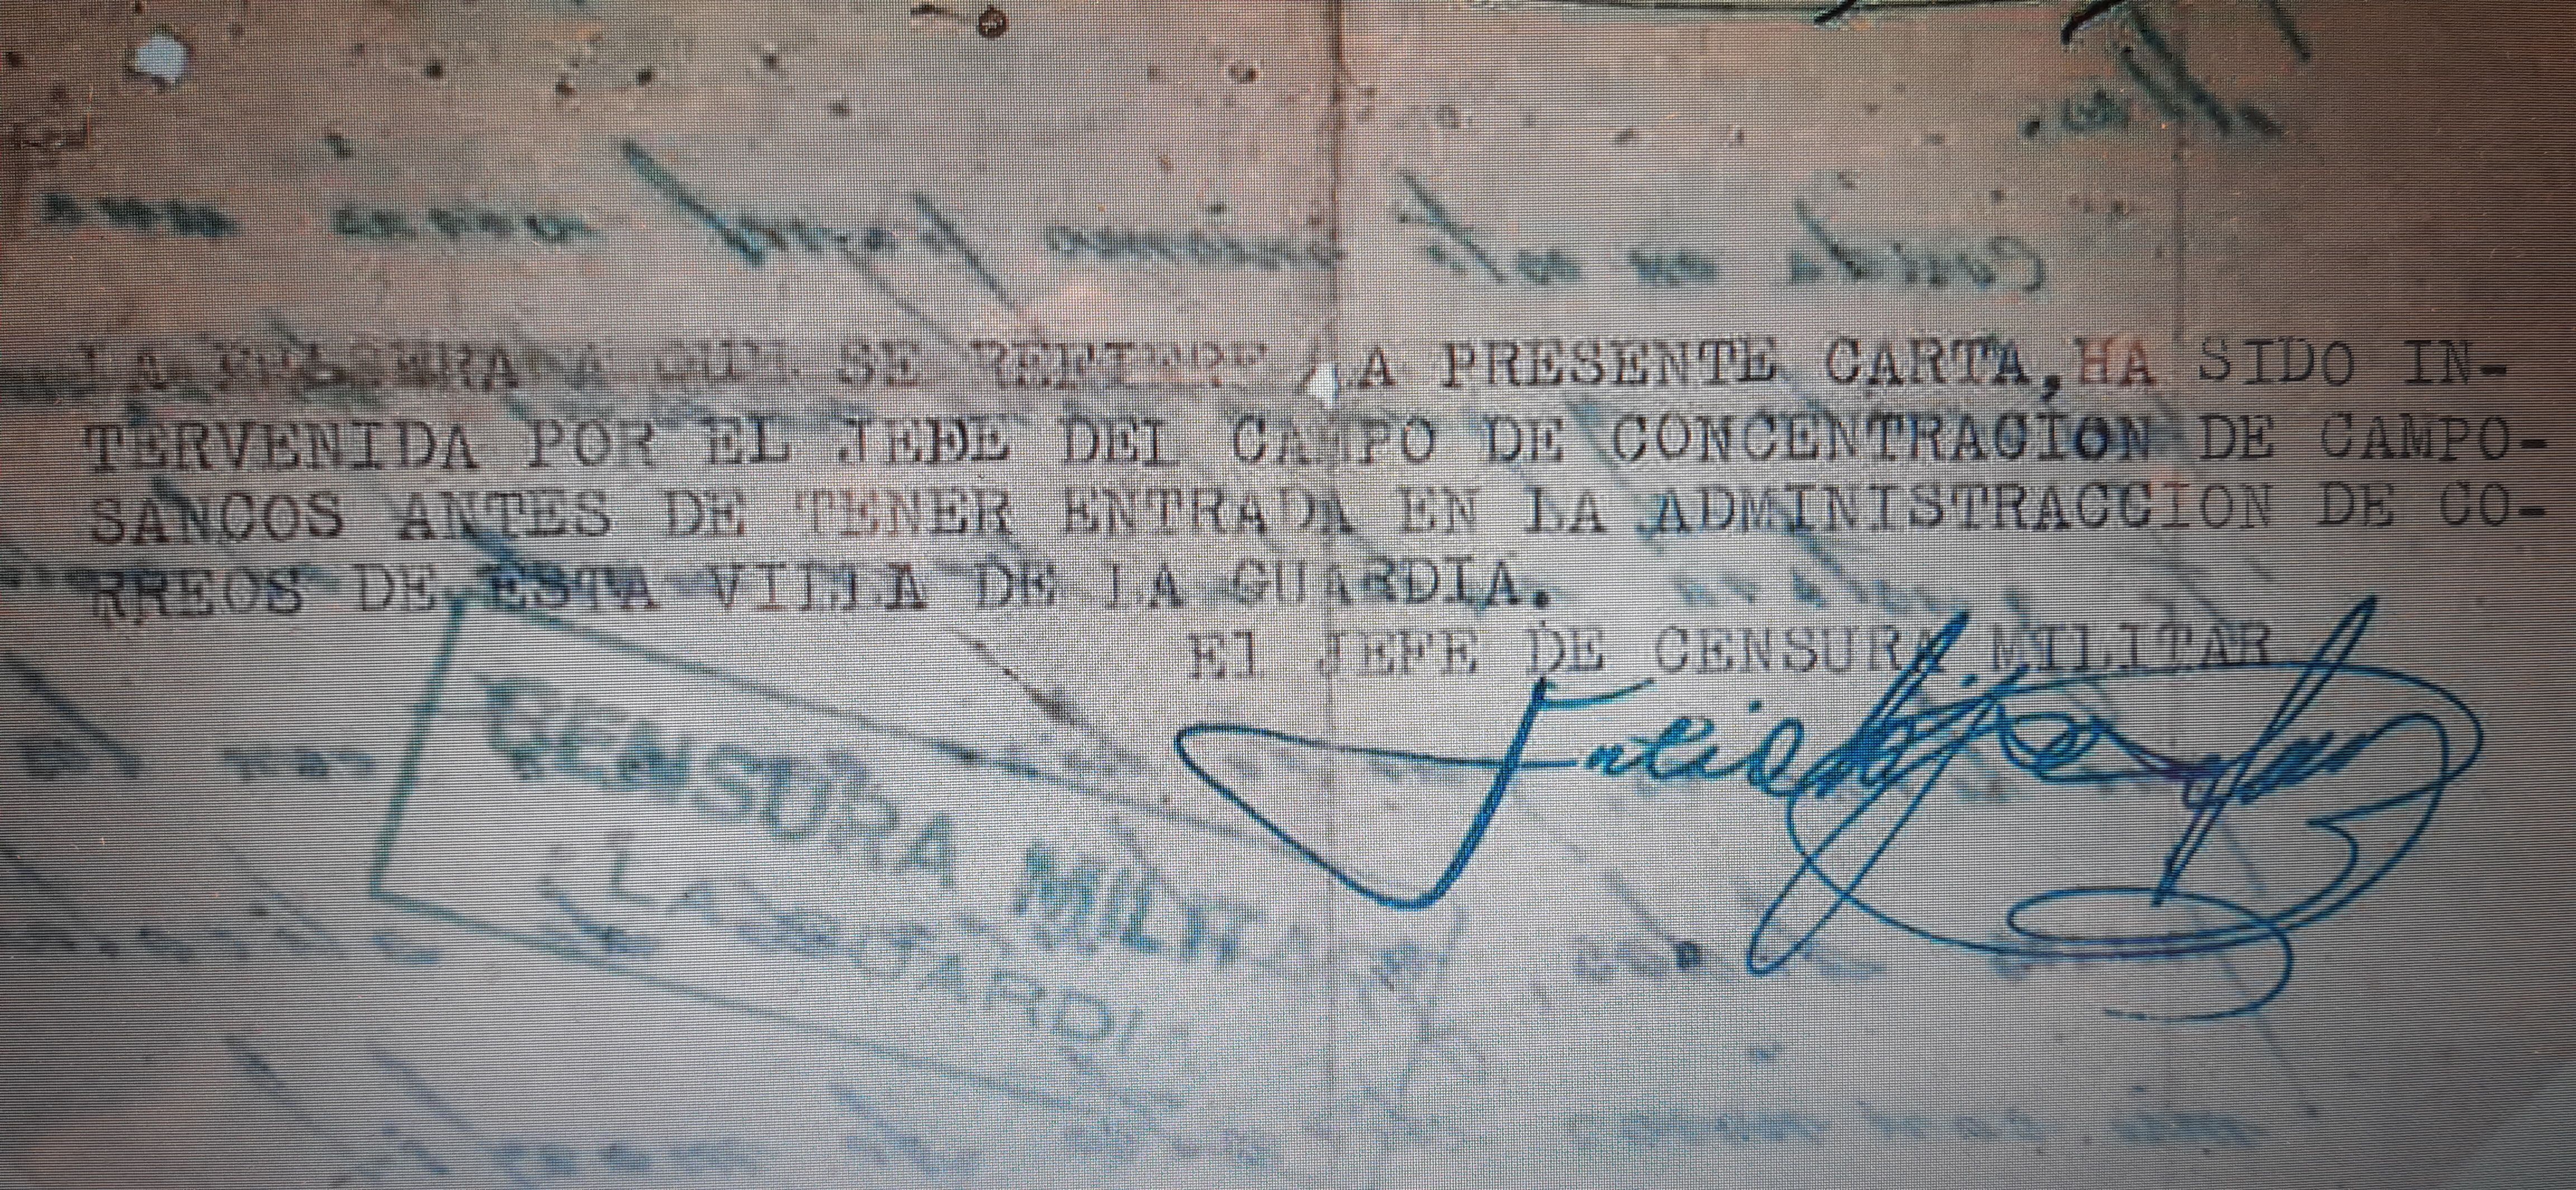 Nota de la censura, informando de la requisa de una pulsera, en una carta de Marcelino Fernández desde el campo de concentración de Camposancos.